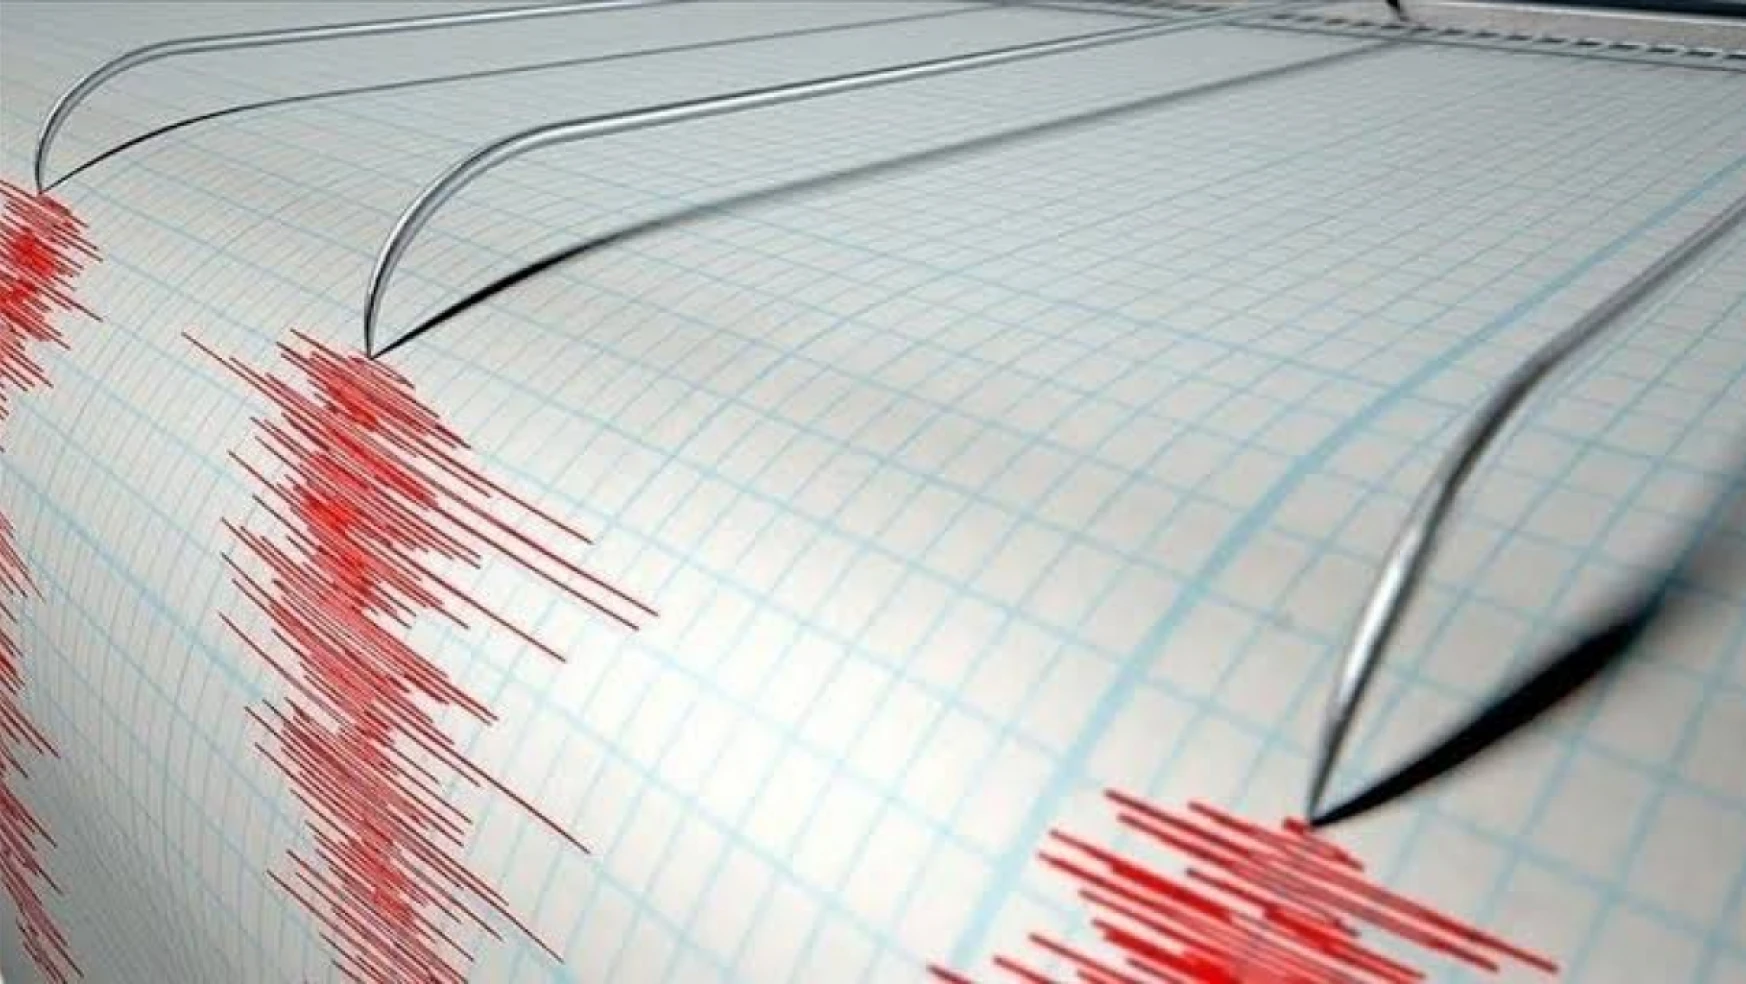 Diyarbakır'da 4.2 büyüklüğünde deprem